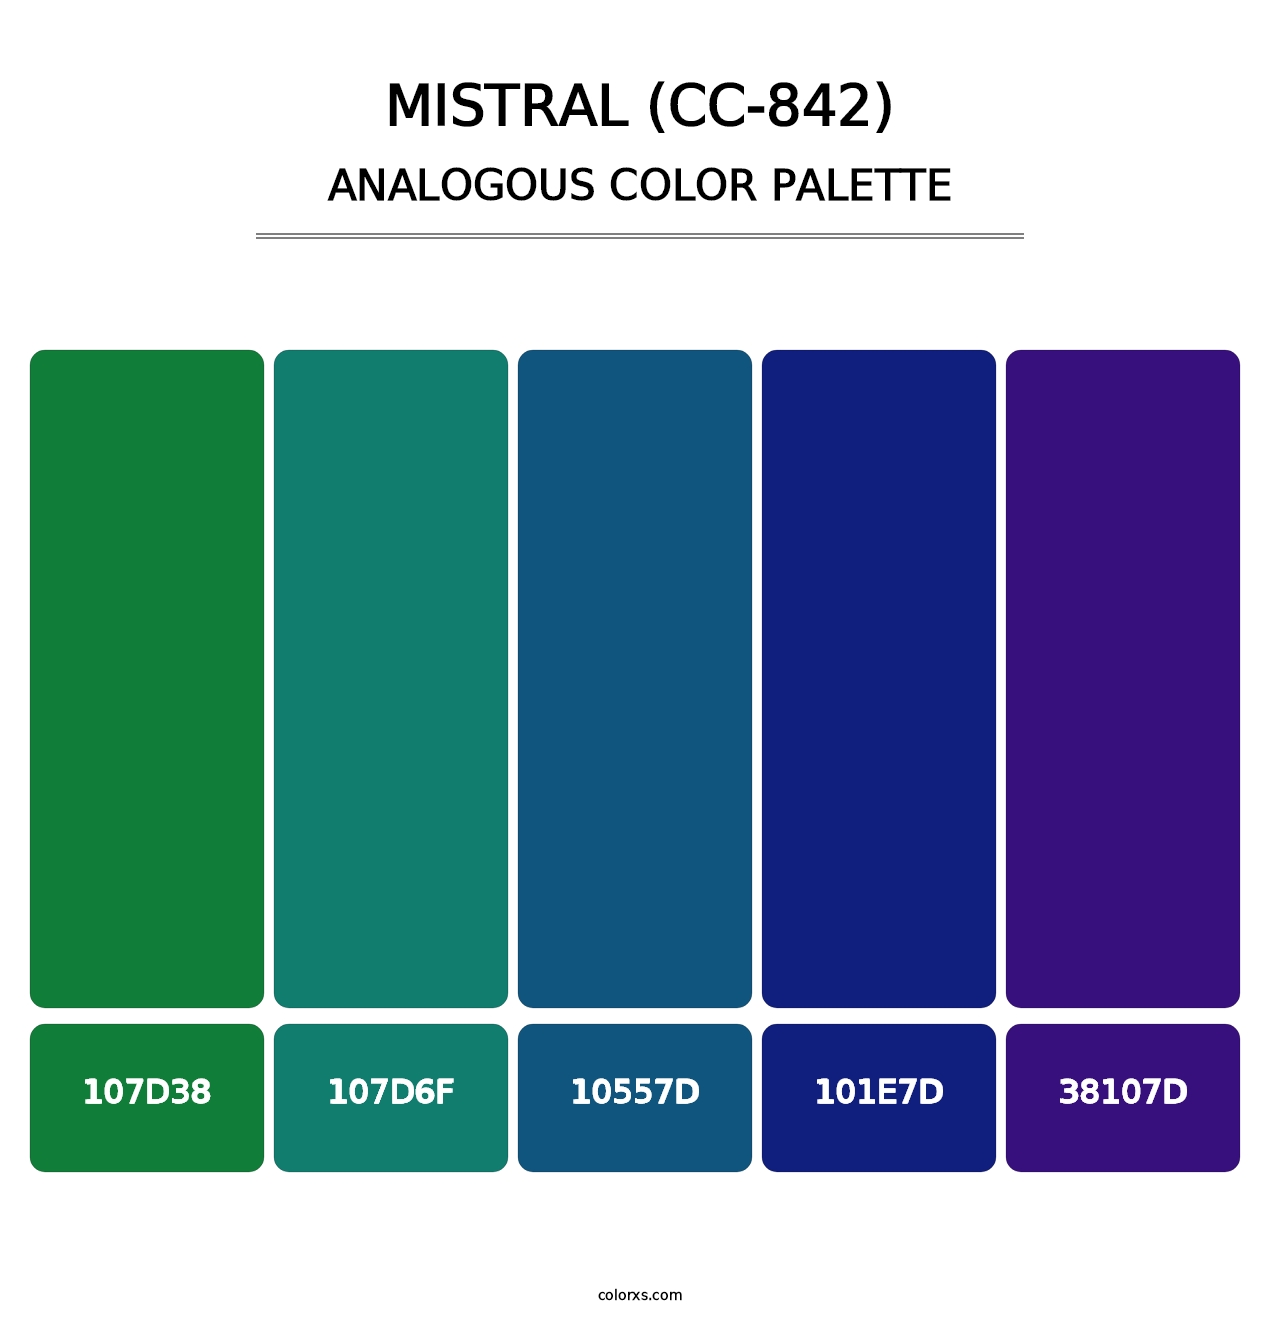 Mistral (CC-842) - Analogous Color Palette